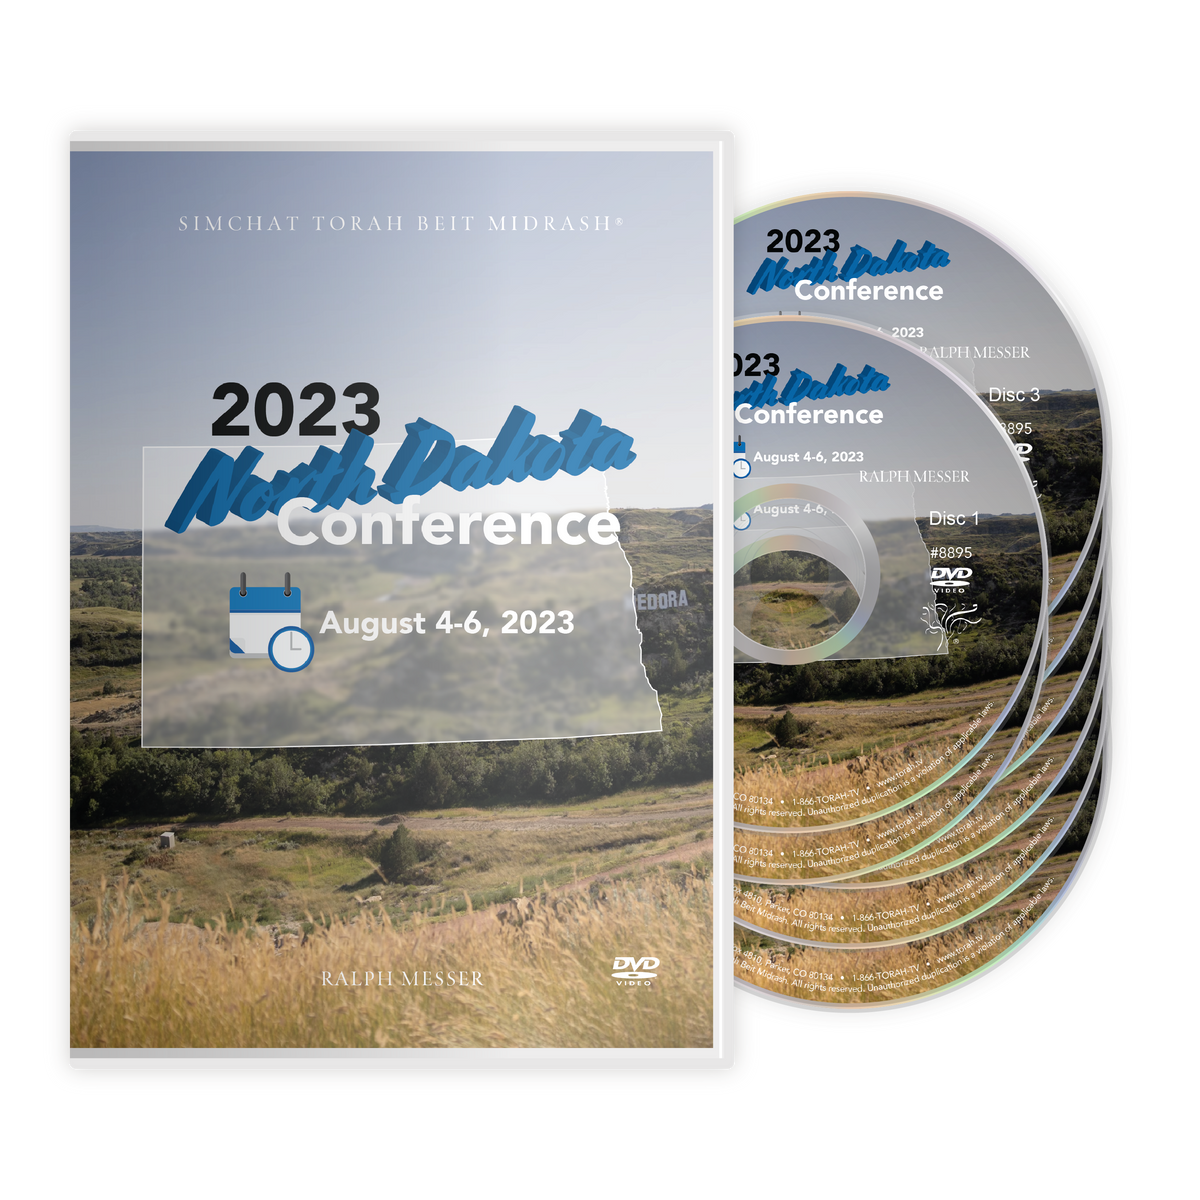 2023 North Dakota Conference